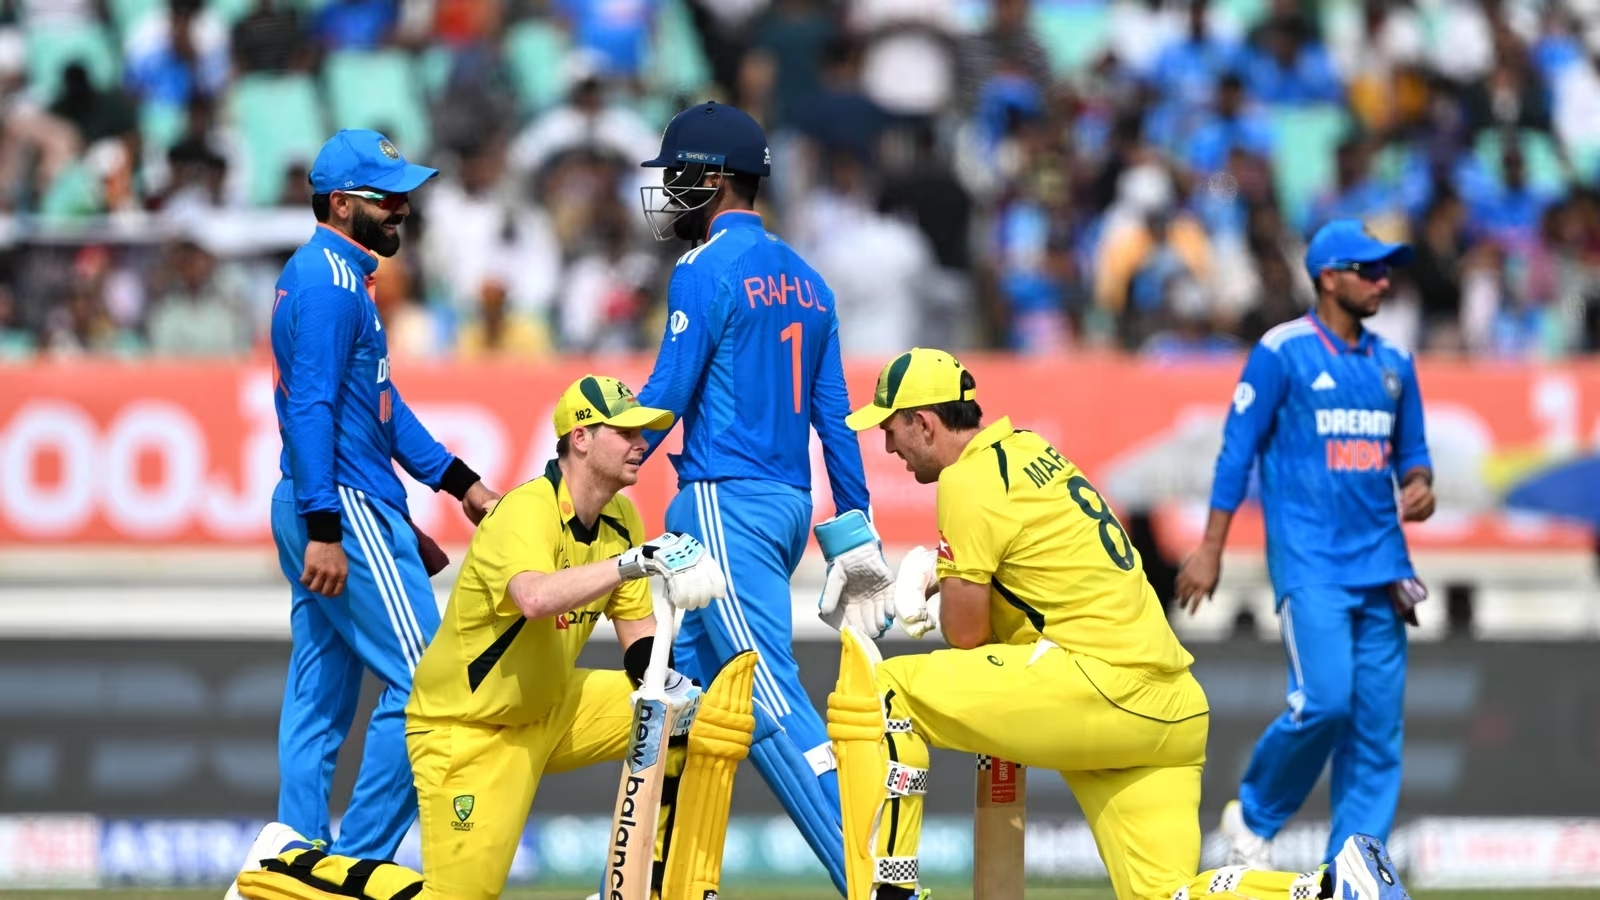 India vs Australia 2023